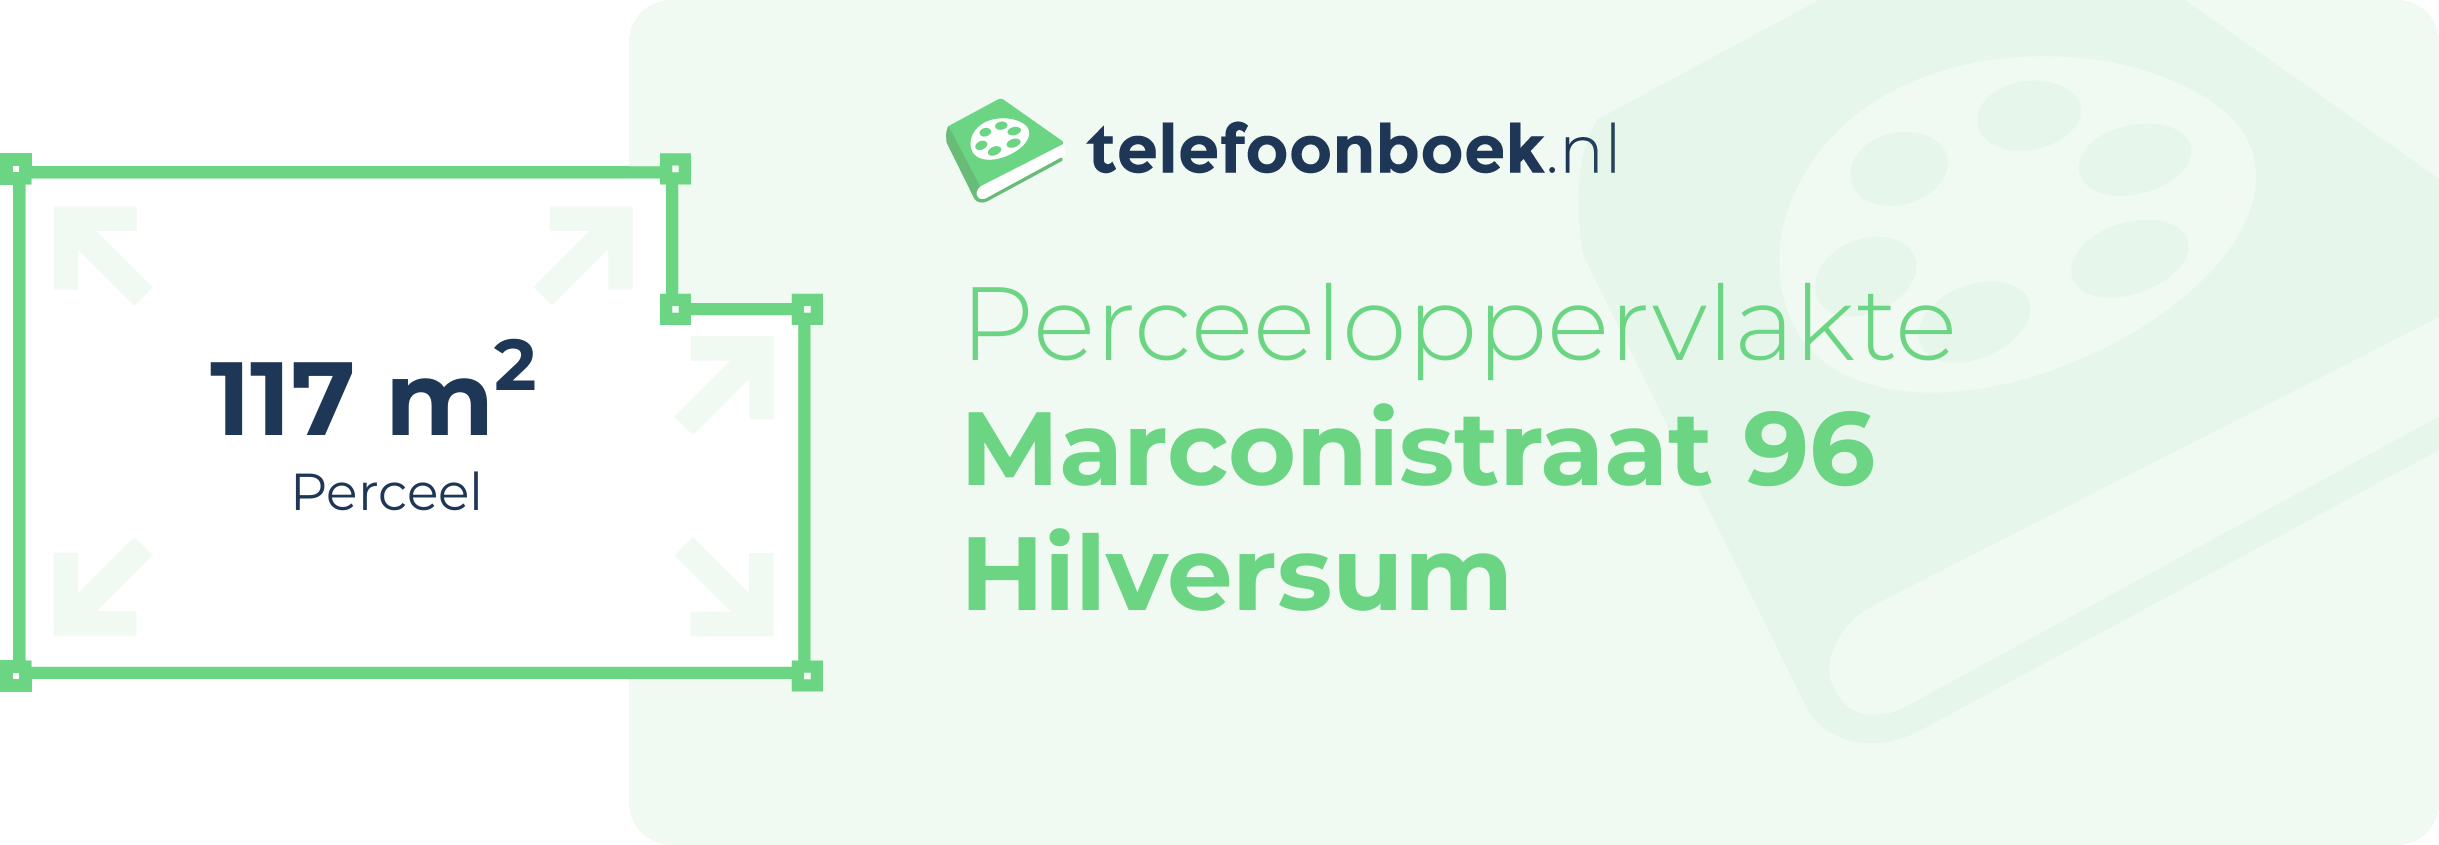 Perceeloppervlakte Marconistraat 96 Hilversum